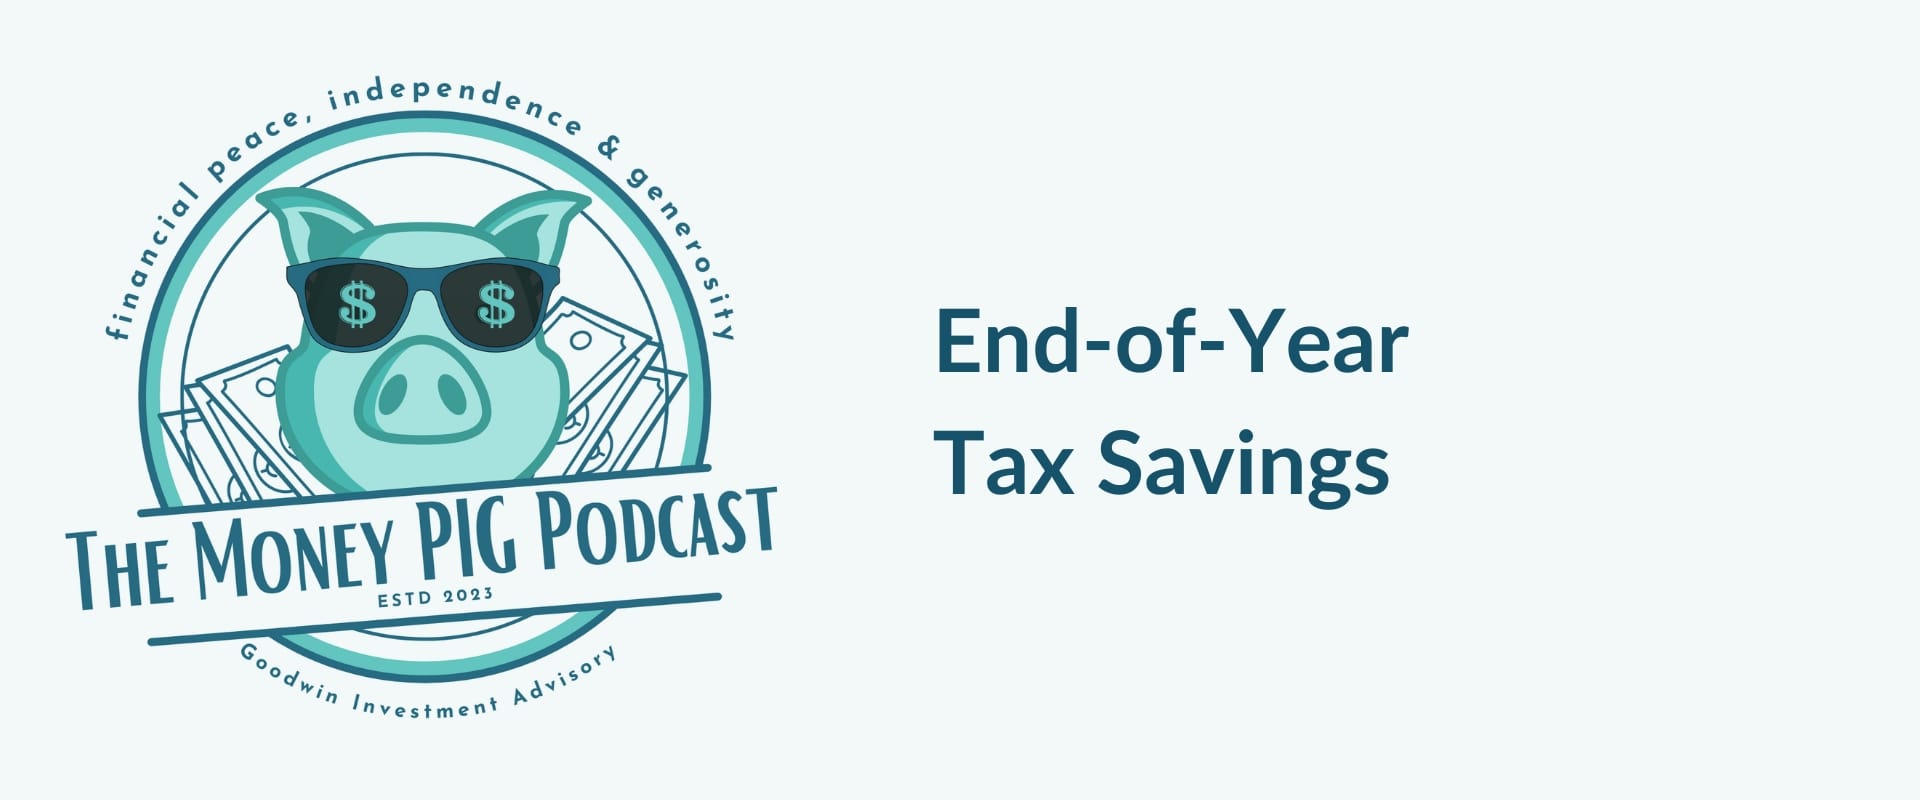 Tax Savings at Year-End